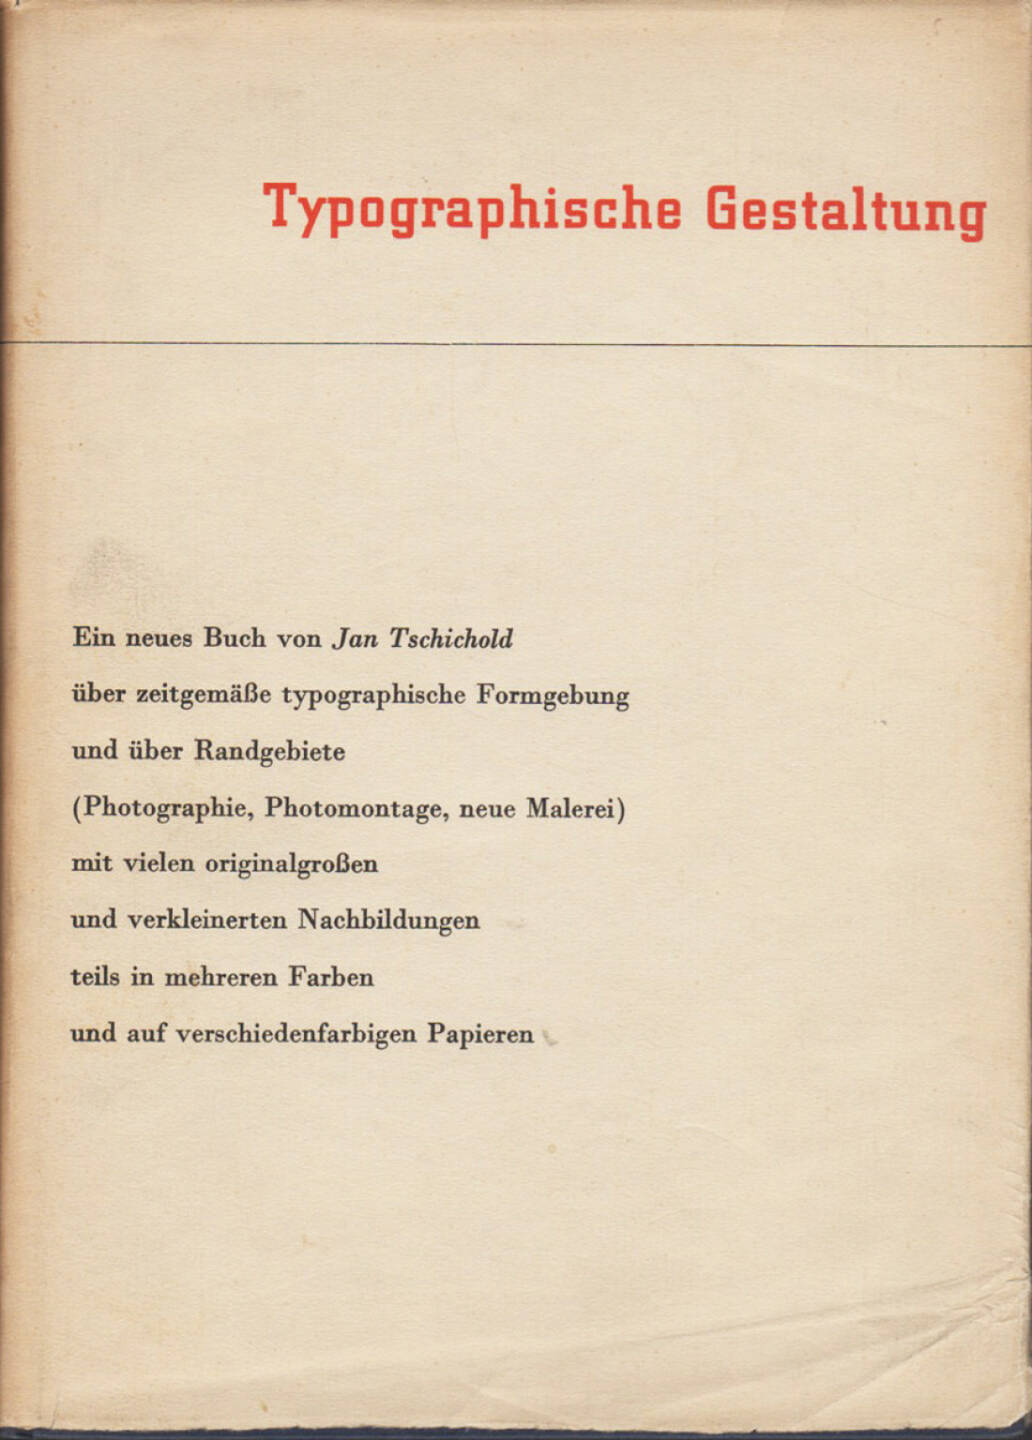 Jan Tschichold - Typographische Gestaltung, Benno Schwabe & Co. 1935, Cover - http://josefchladek.com/book/jan_tschichold_-_typographische_gestaltung